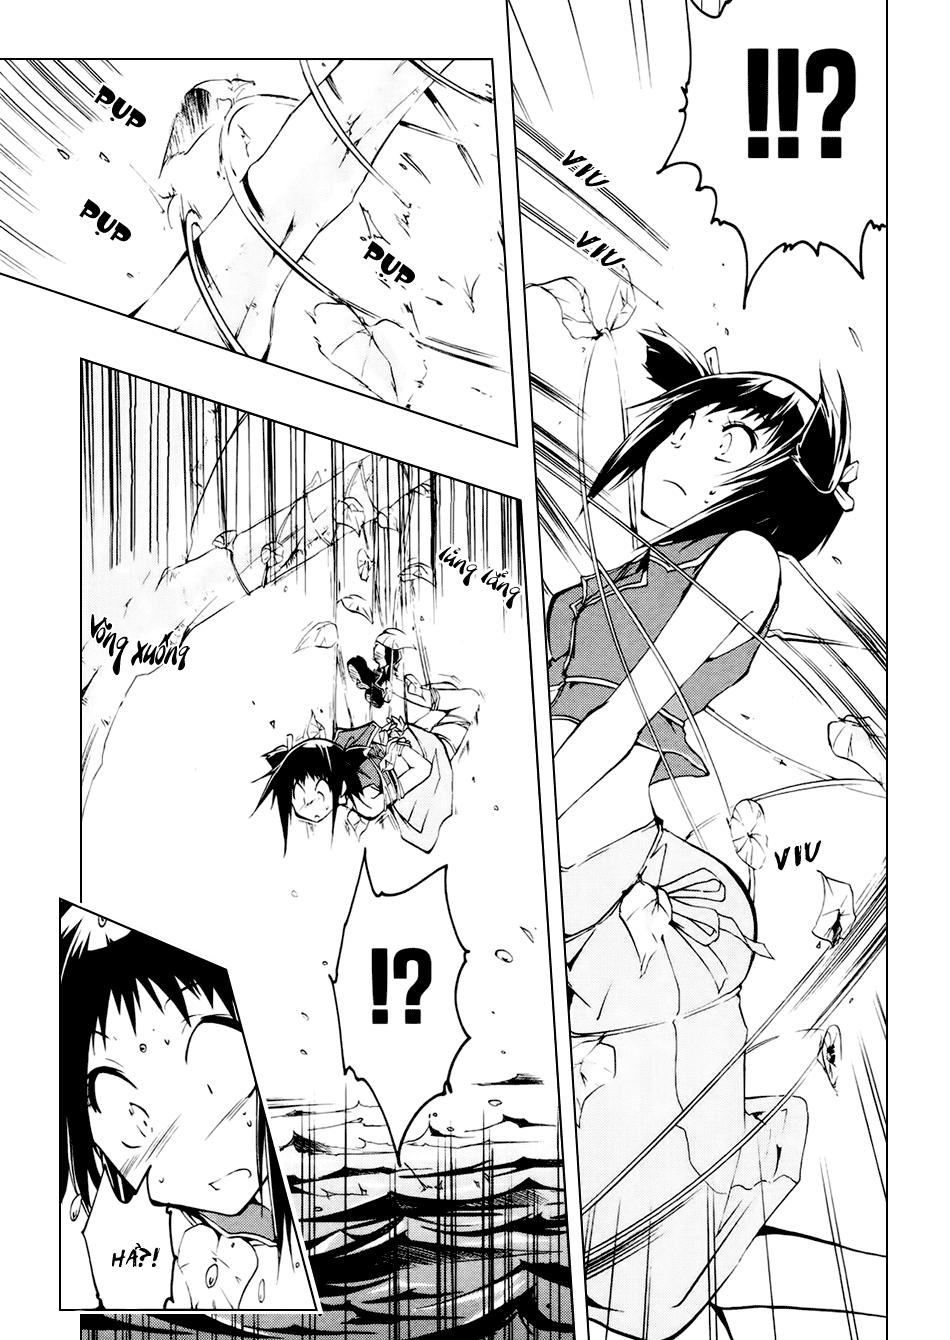 [Manga]: Esprit 0021